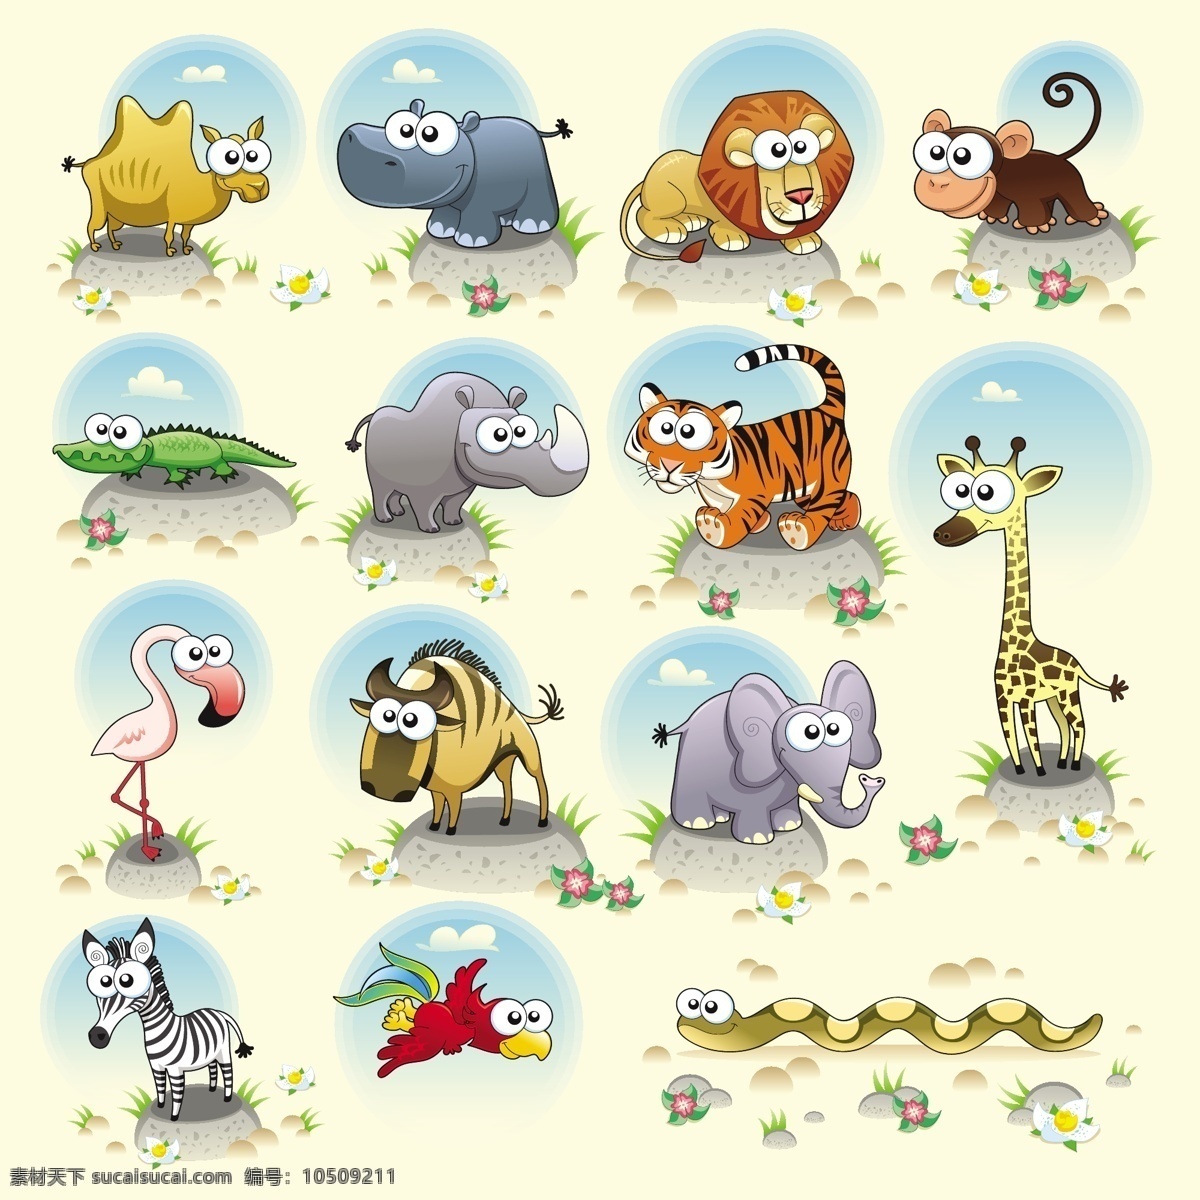 卡通 动物 插画 动物插画 卡通动物 矢量动物 动物素材 儿童插画 插画背景 矢量素材 陆地动物 生物世界 白色